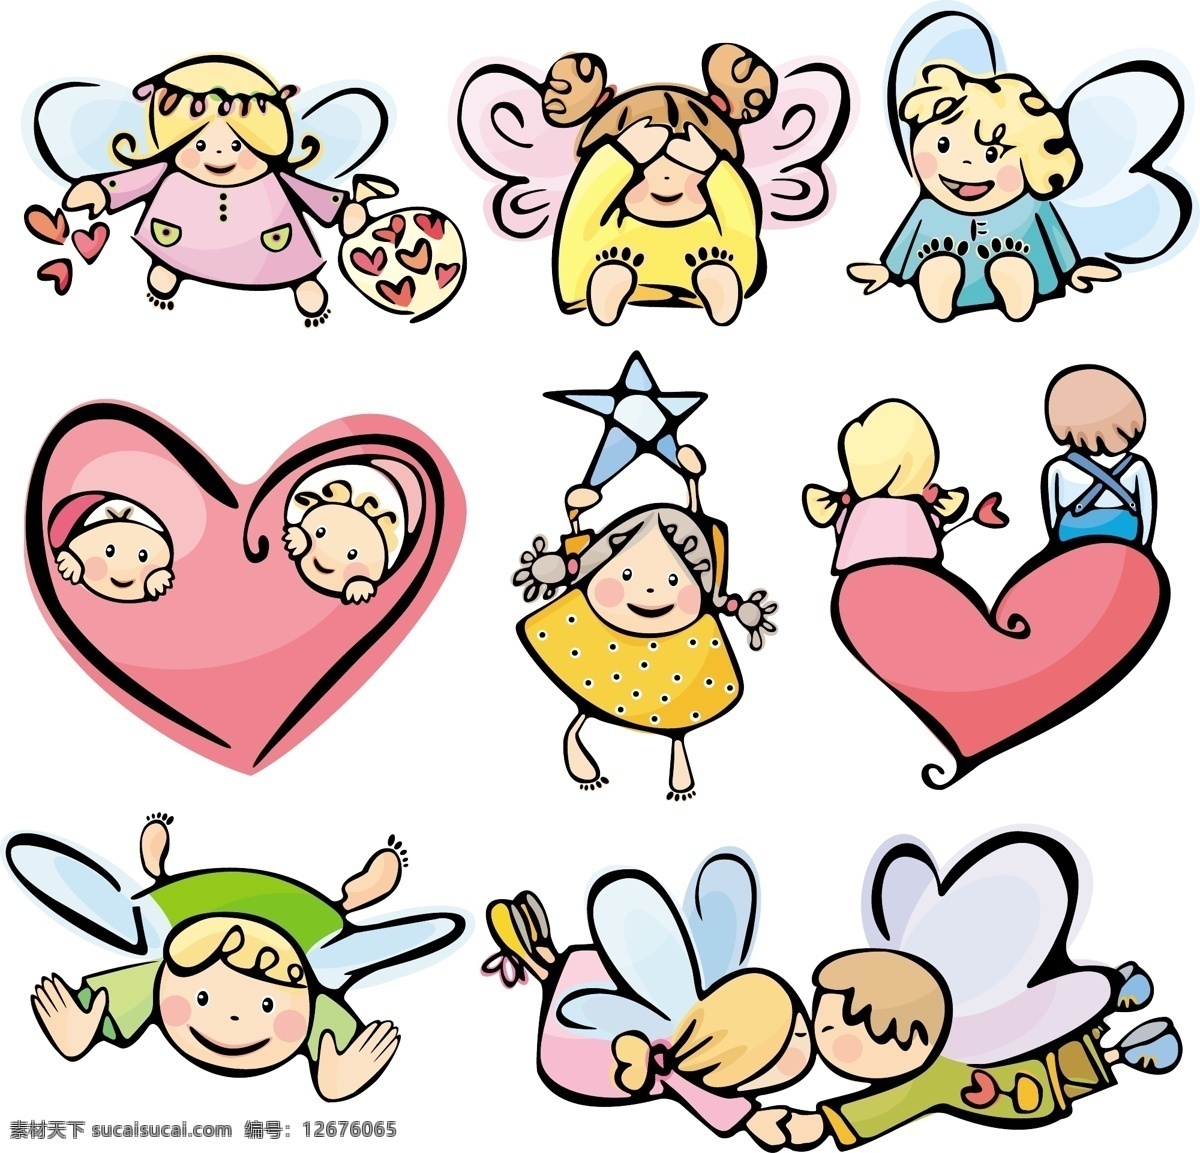 可爱 卡通 插画 背景 天使 人物 少儿 婴儿 儿童 温馨 矢量素材 可爱元素矢量 动漫动画 动漫人物